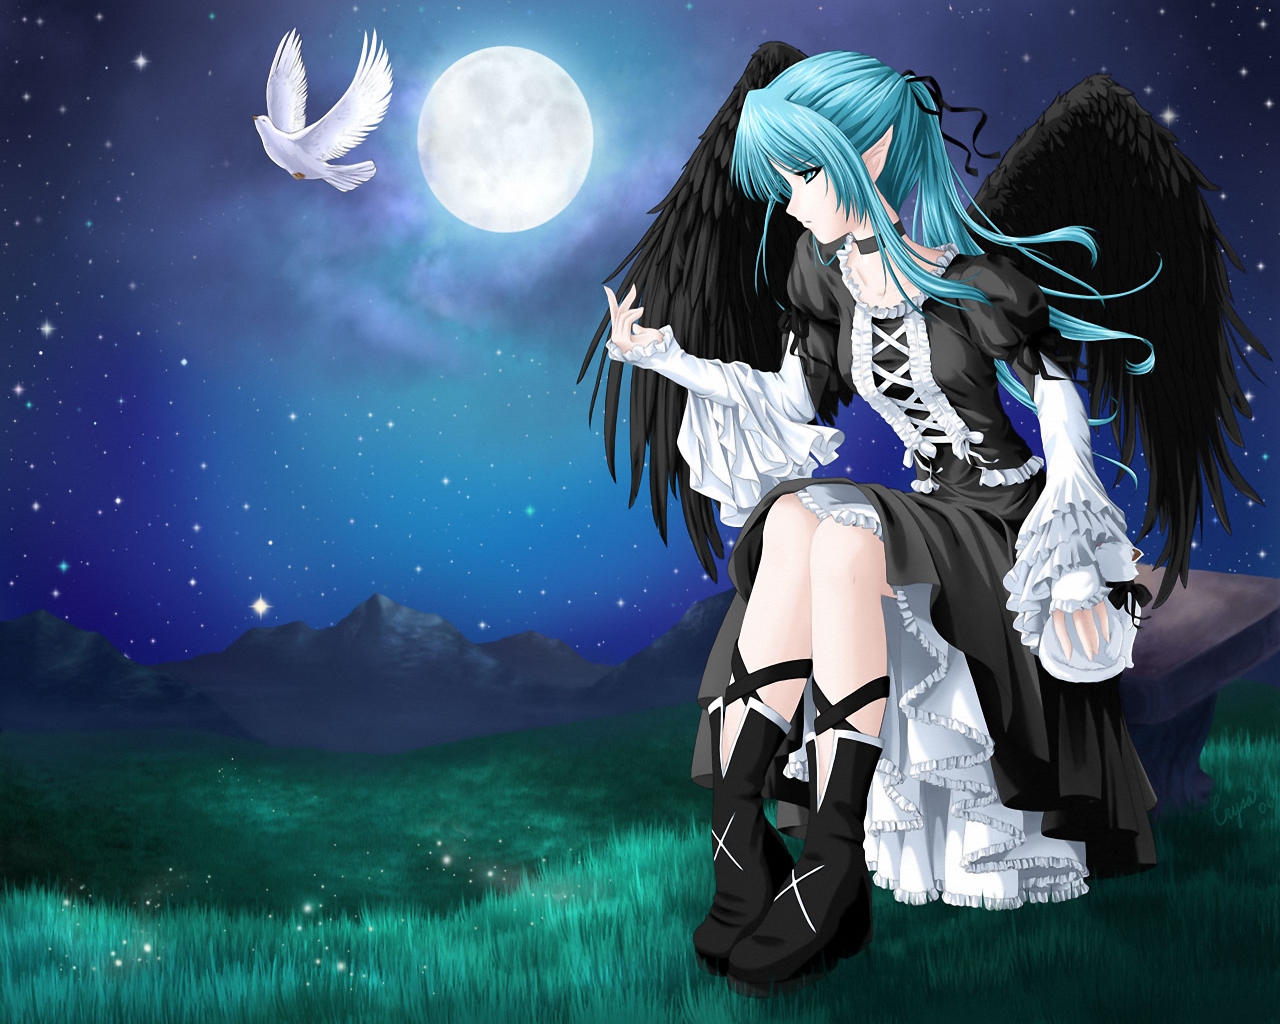 3d обои Девушка с чёрными крыльями лунной ночью сидит на скамейке и смотрит на улетающего с её руки белого голубя  ангелы # 19387